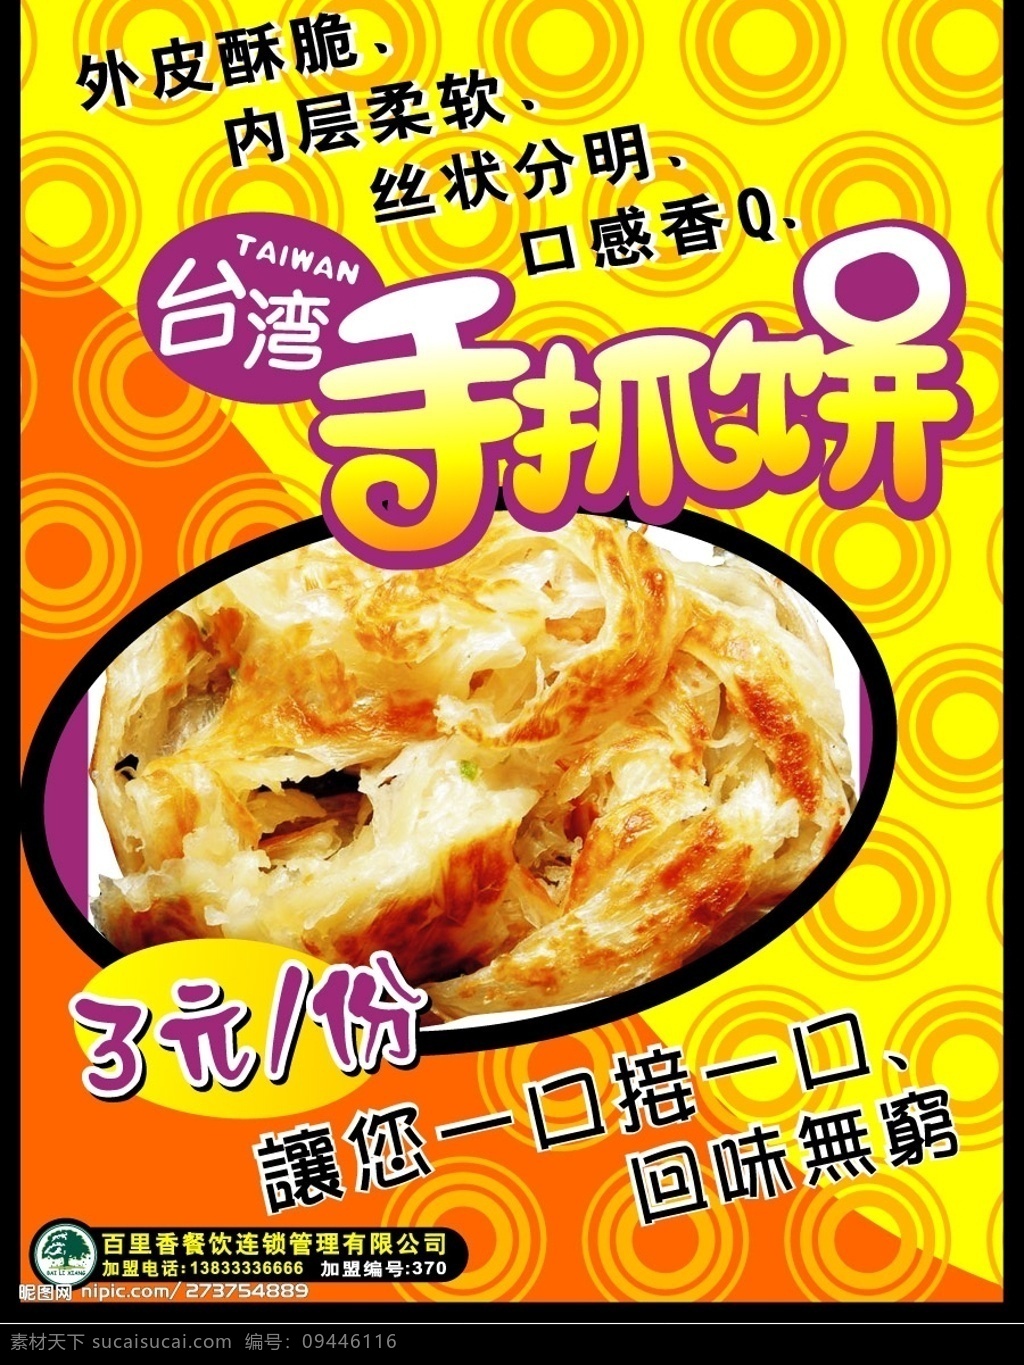 台湾精美小吃 小吃 美食 广告 手抓饼 pop 底纹 经典 矢量图库 平面设计